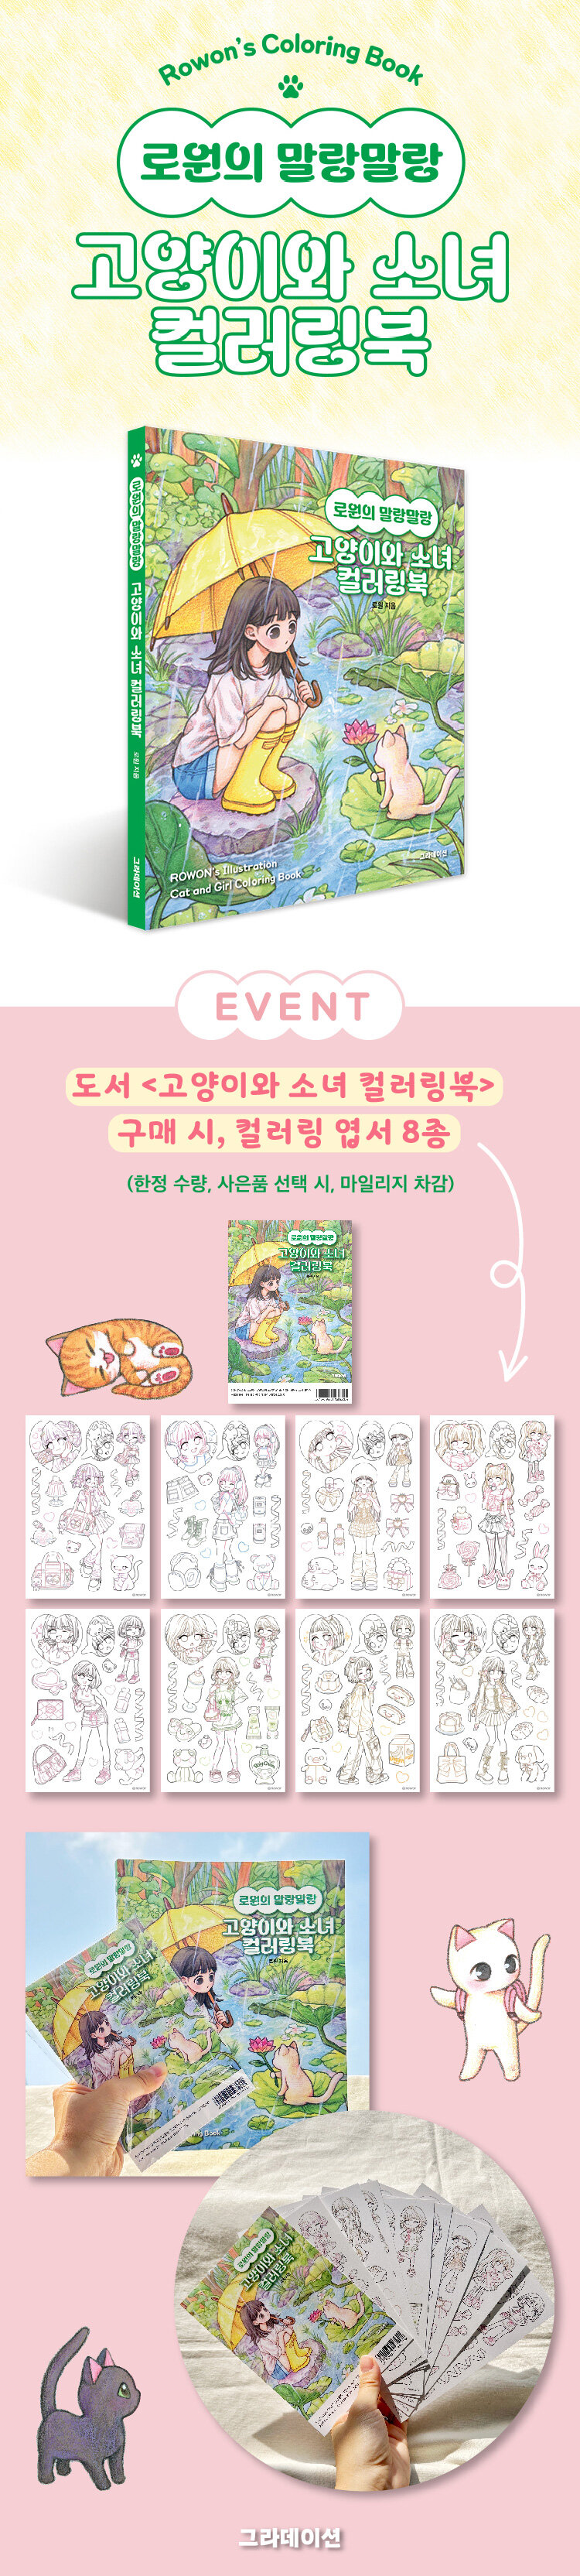 <로원의 말랑말랑 고양이와 소녀 컬러링북> 출간 기념 이벤트